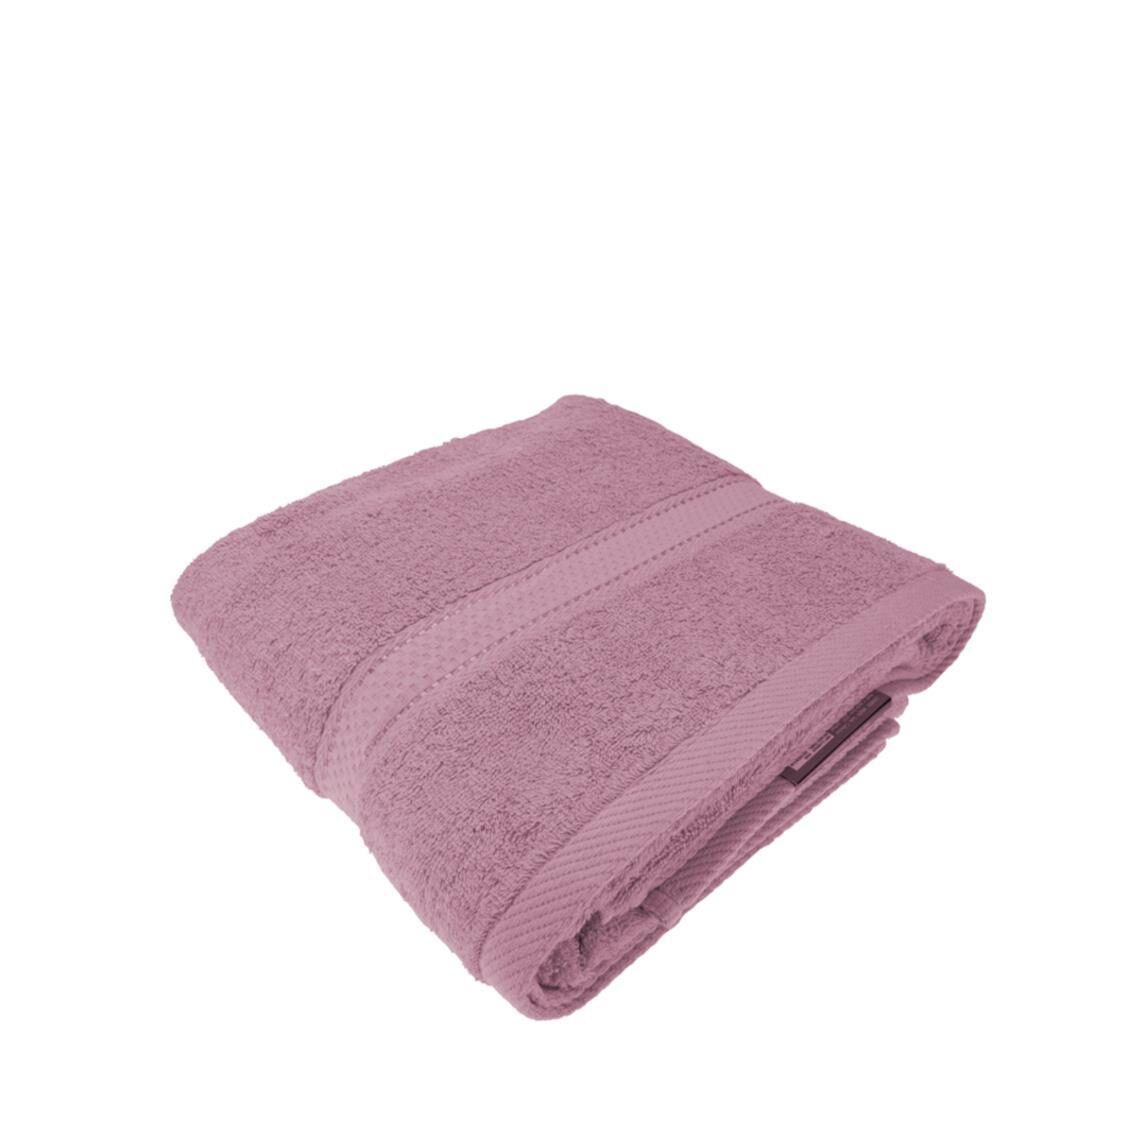 Charles Millen Suite Collection CT108 Classique Big Bath Towel Rose